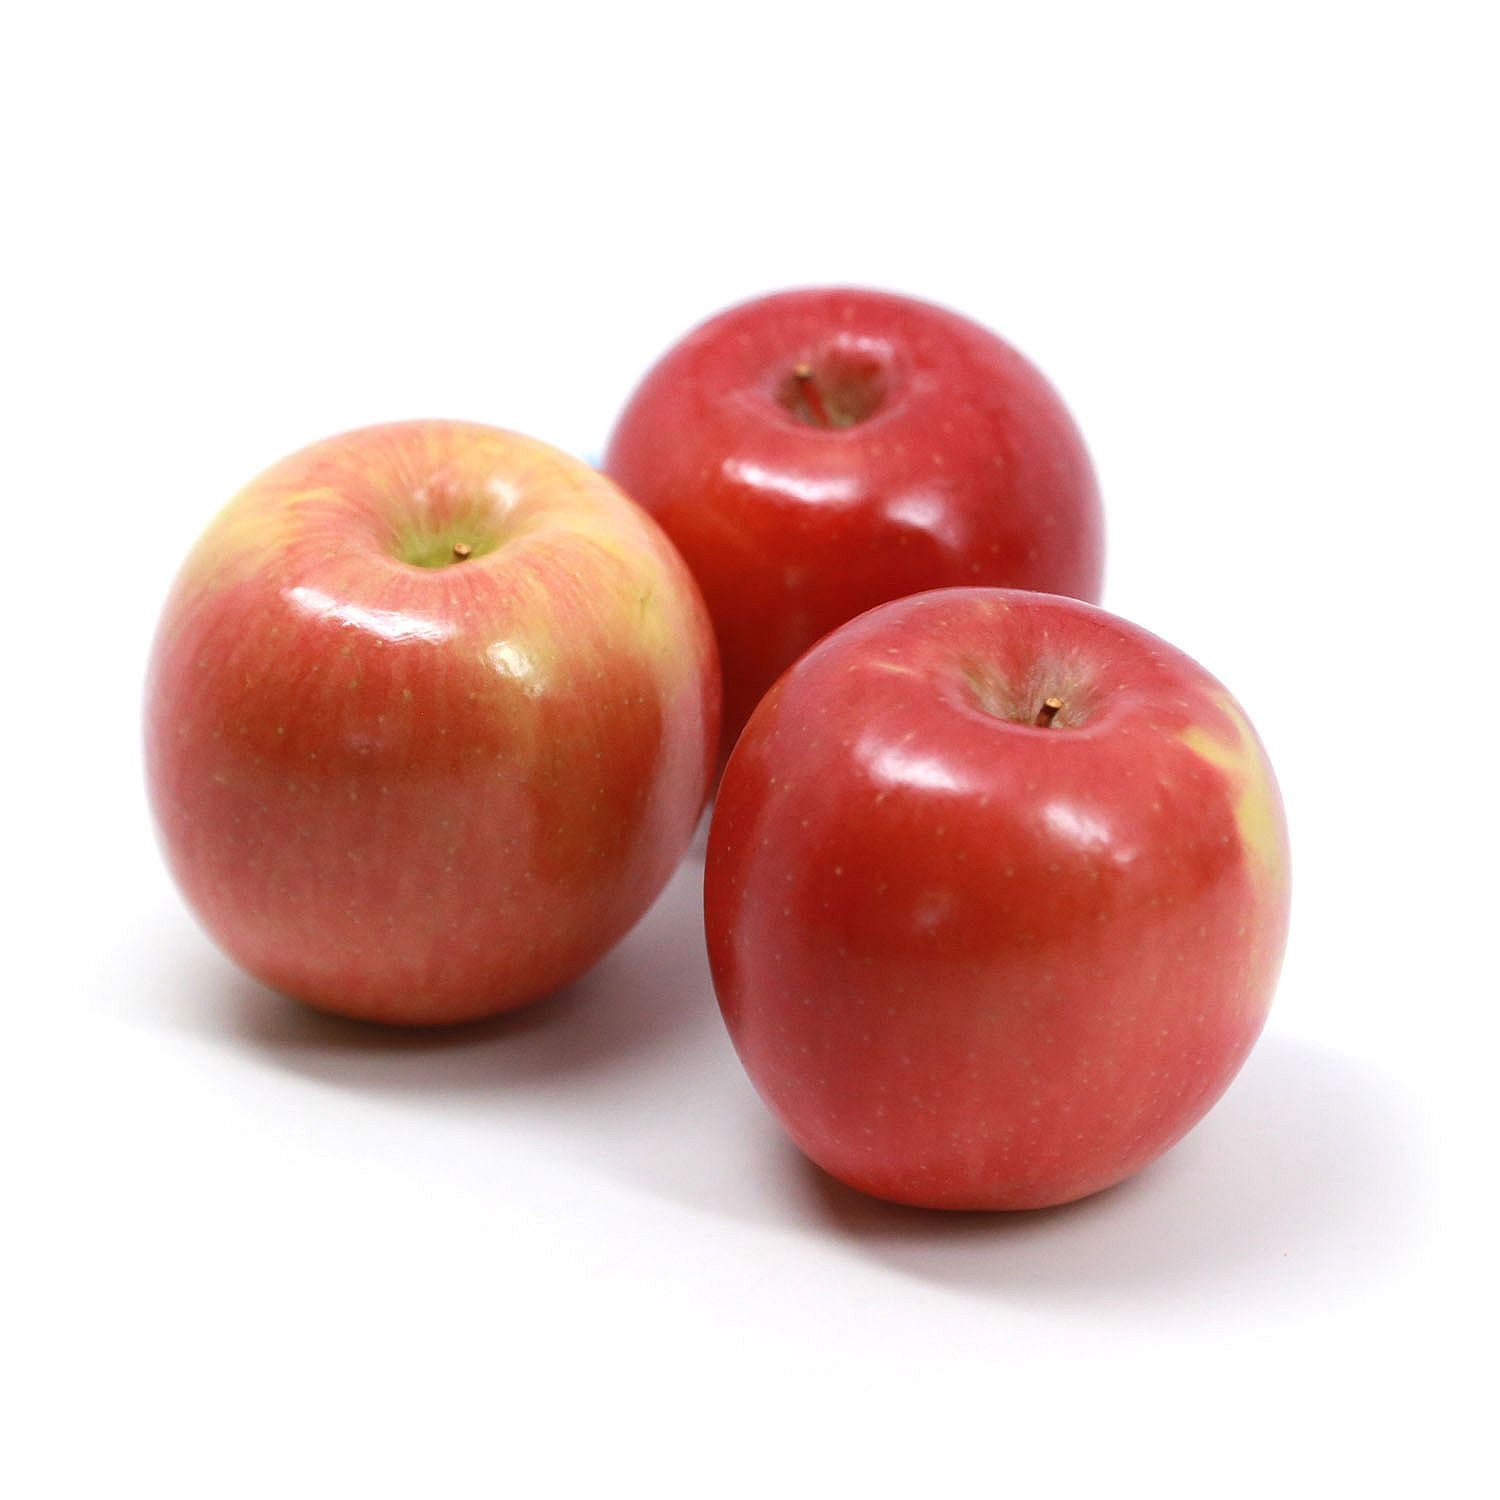 Fuji Apples, 3 lb